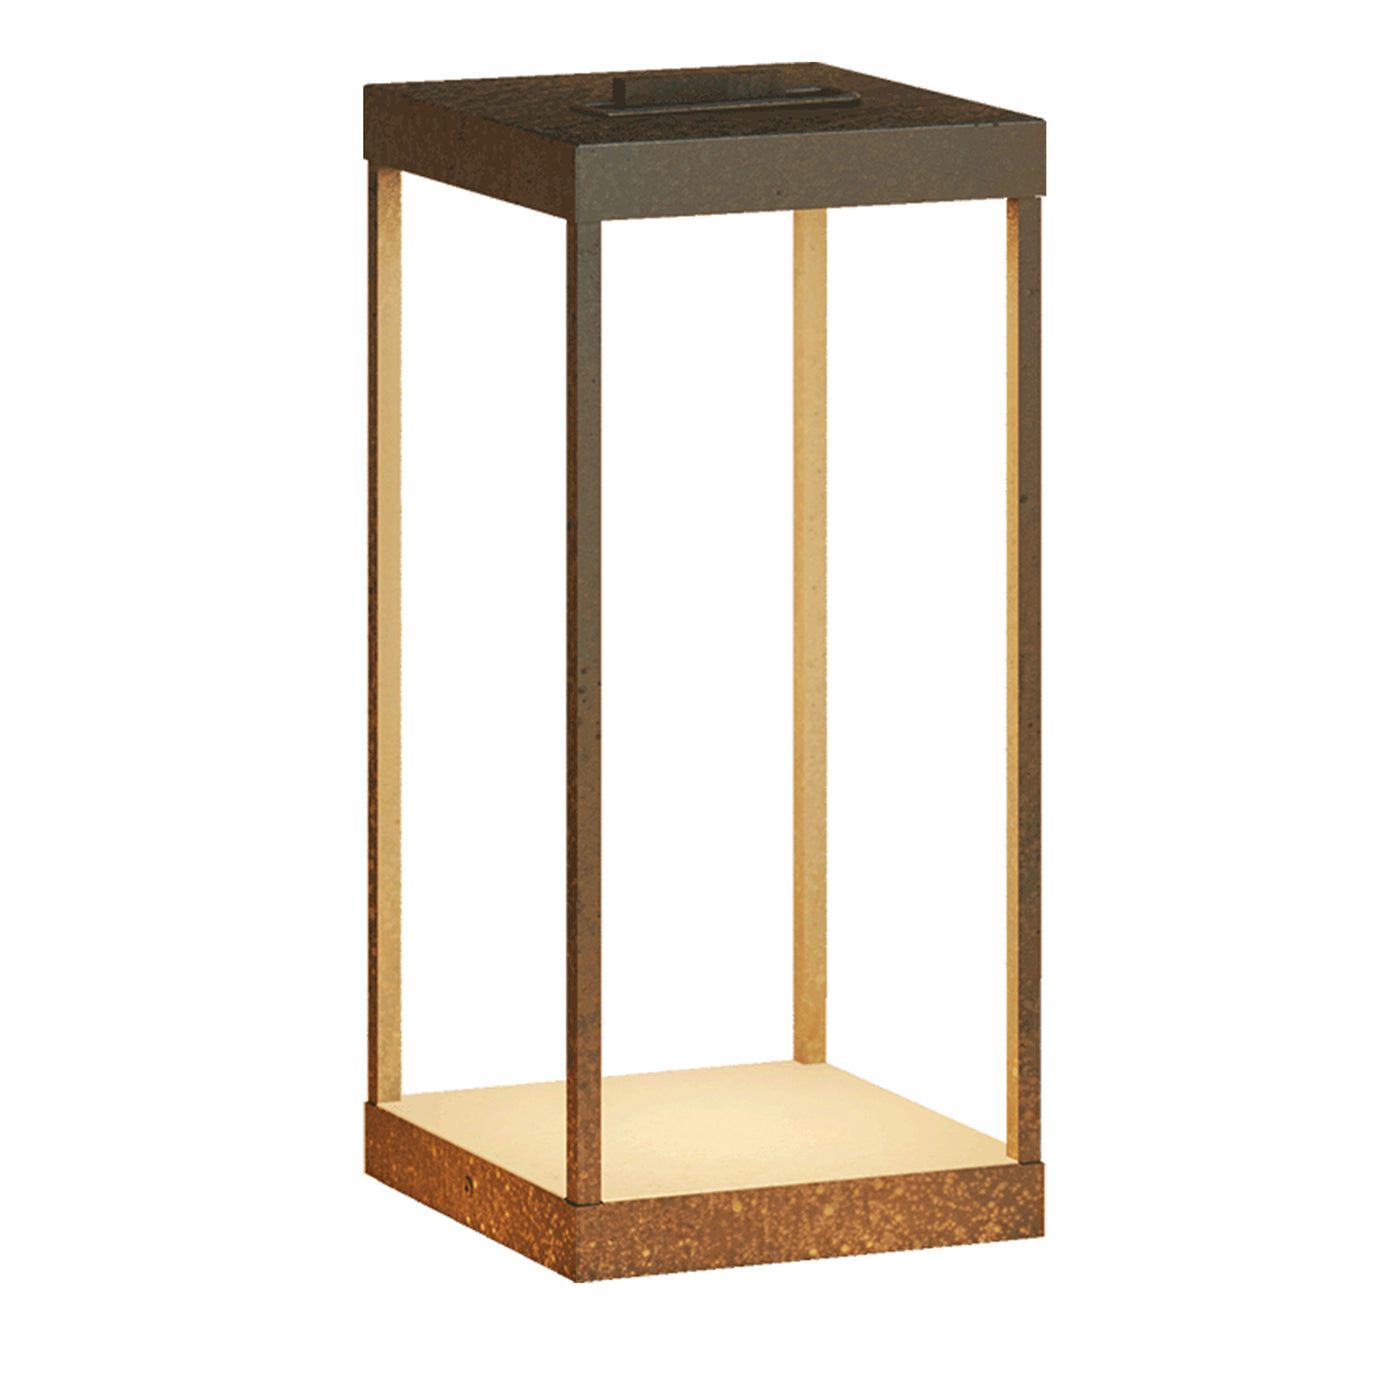 Lanterne Slim Medium Outdoor Floor Lamp - Main view